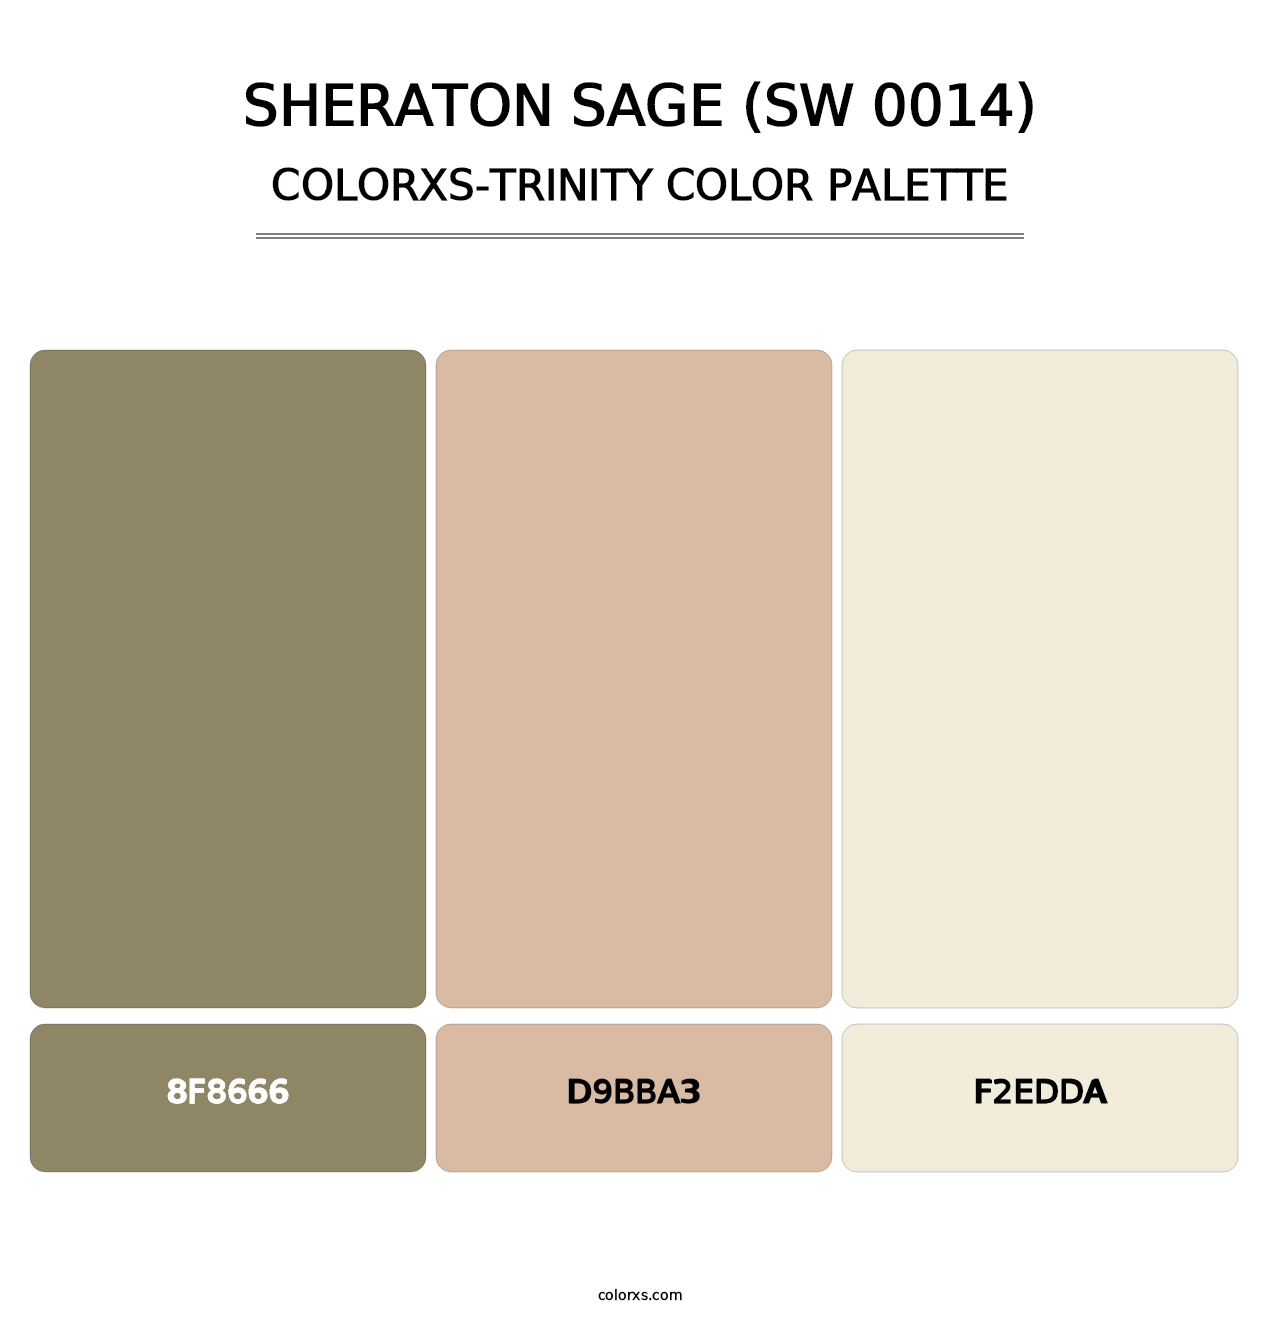 Sheraton Sage (SW 0014) - Colorxs Trinity Palette